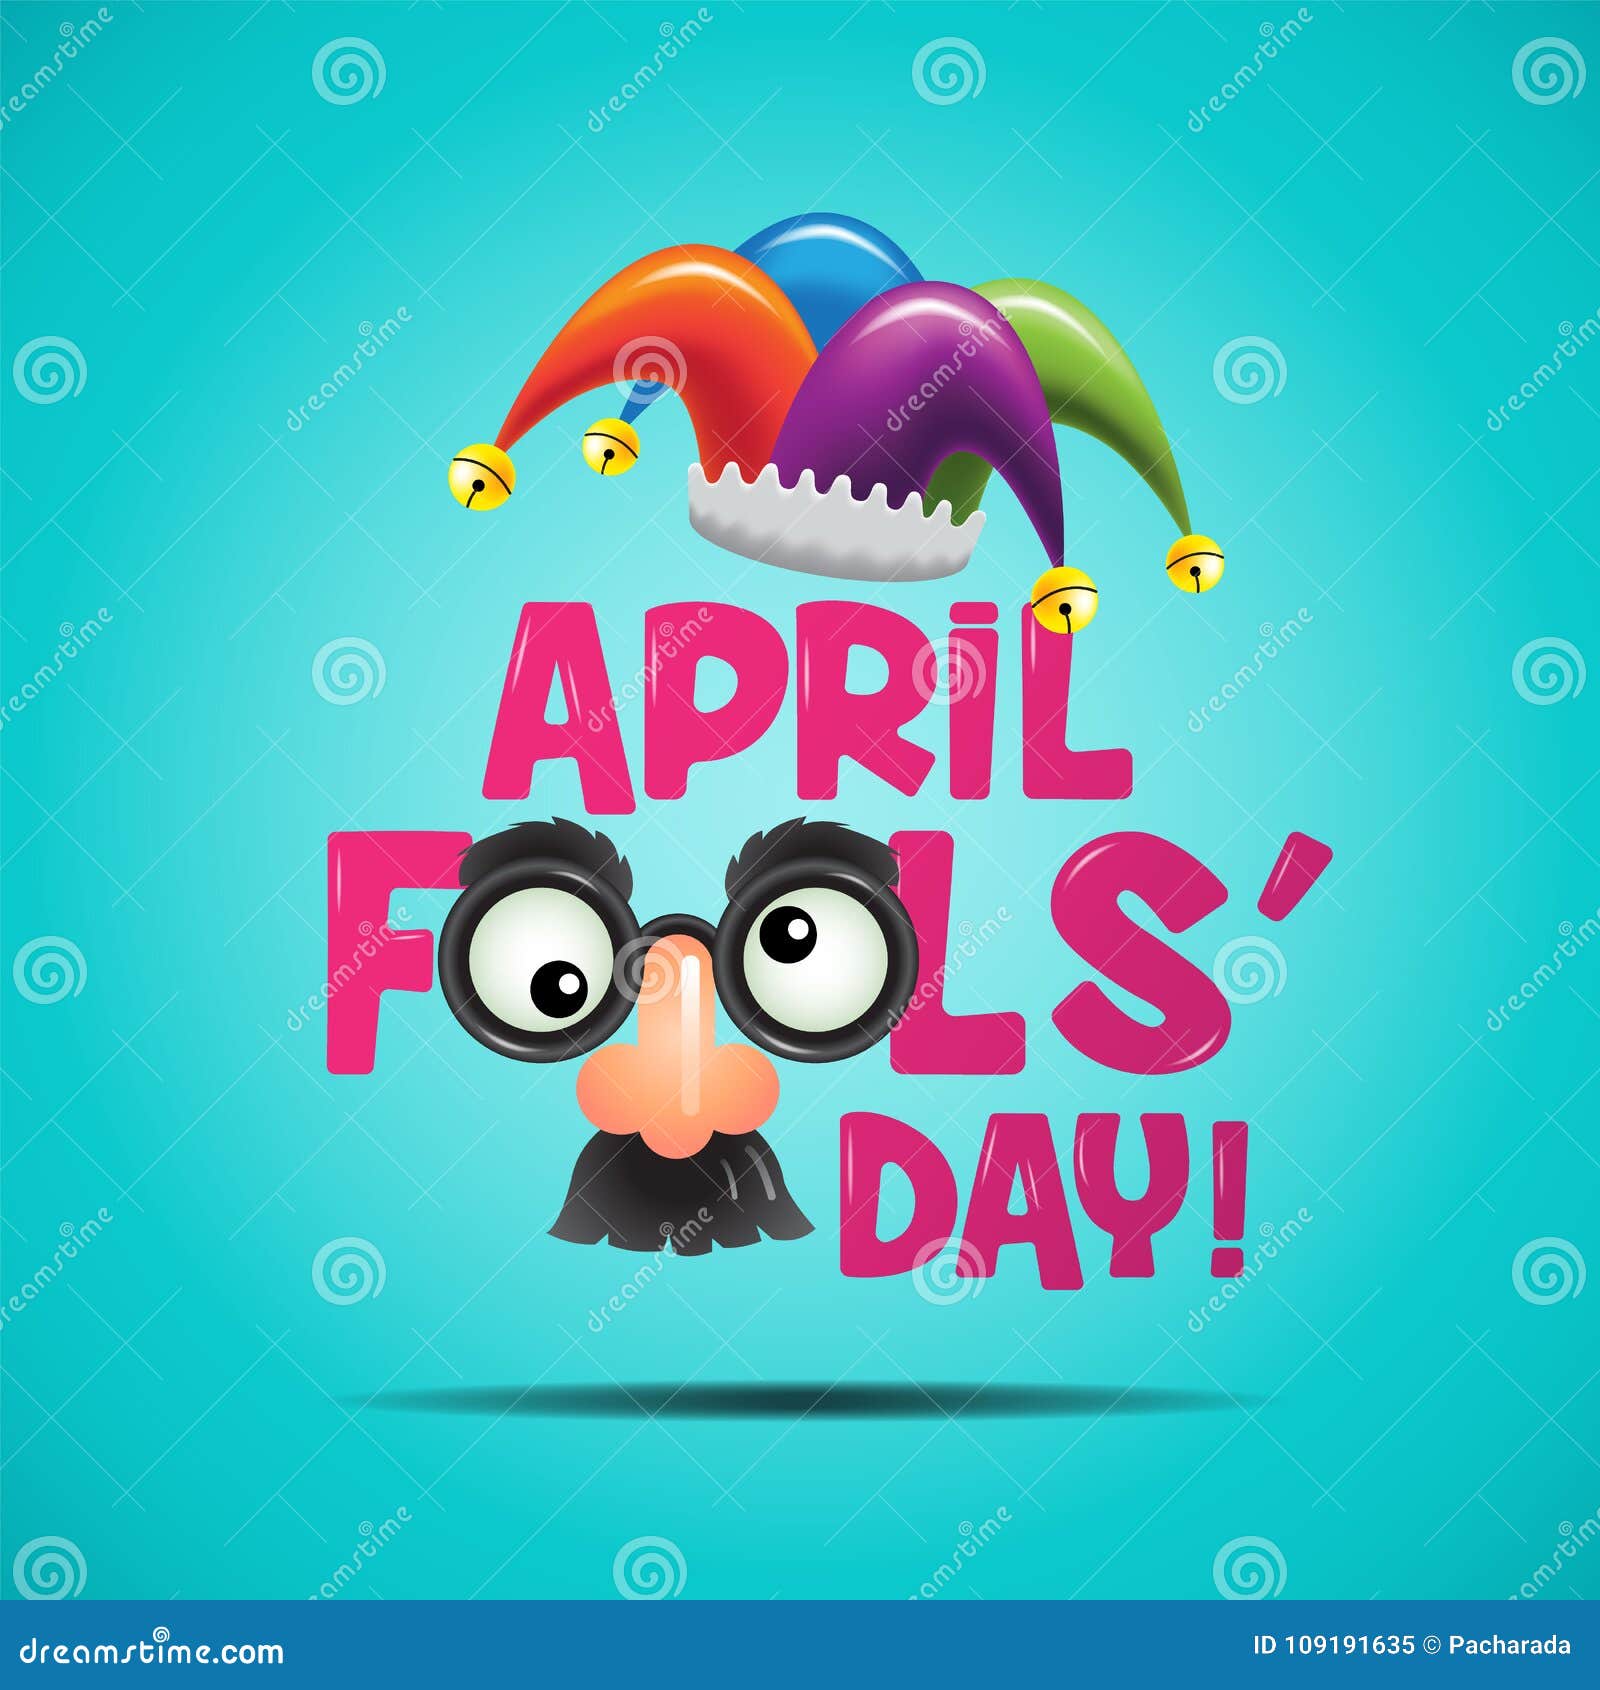 april fools day 